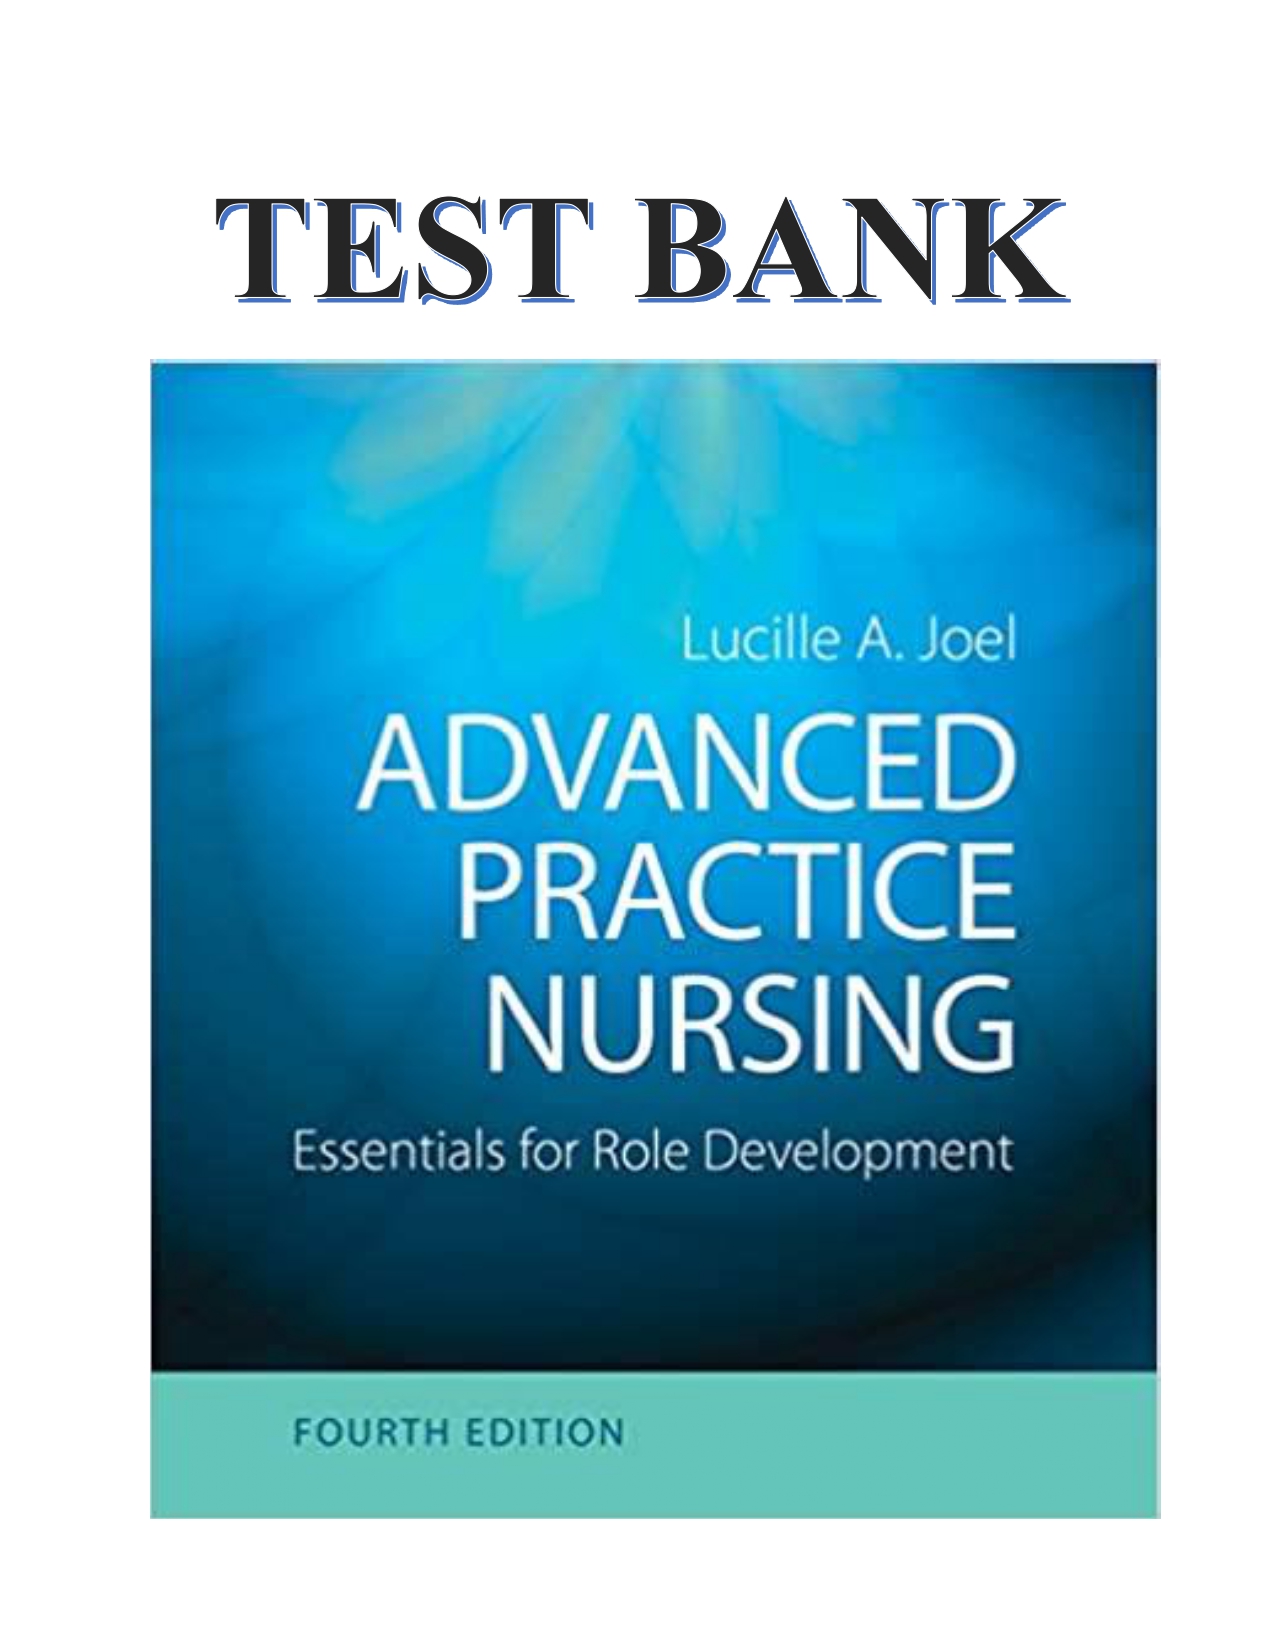 Essentials for Nursing Practice [Book]